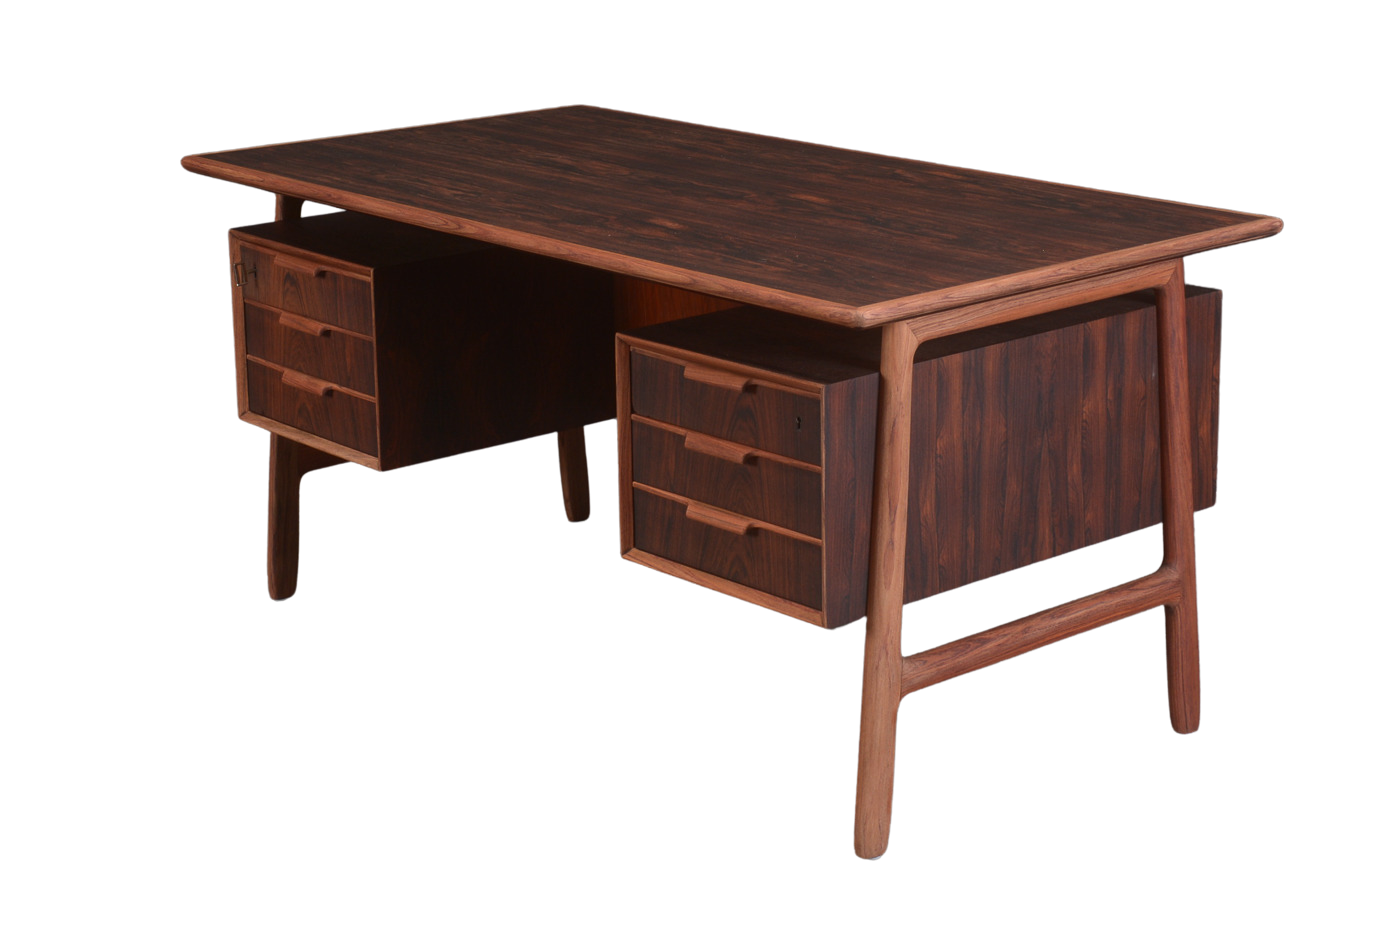 Rosewood Desk by Gunni Omann Sold